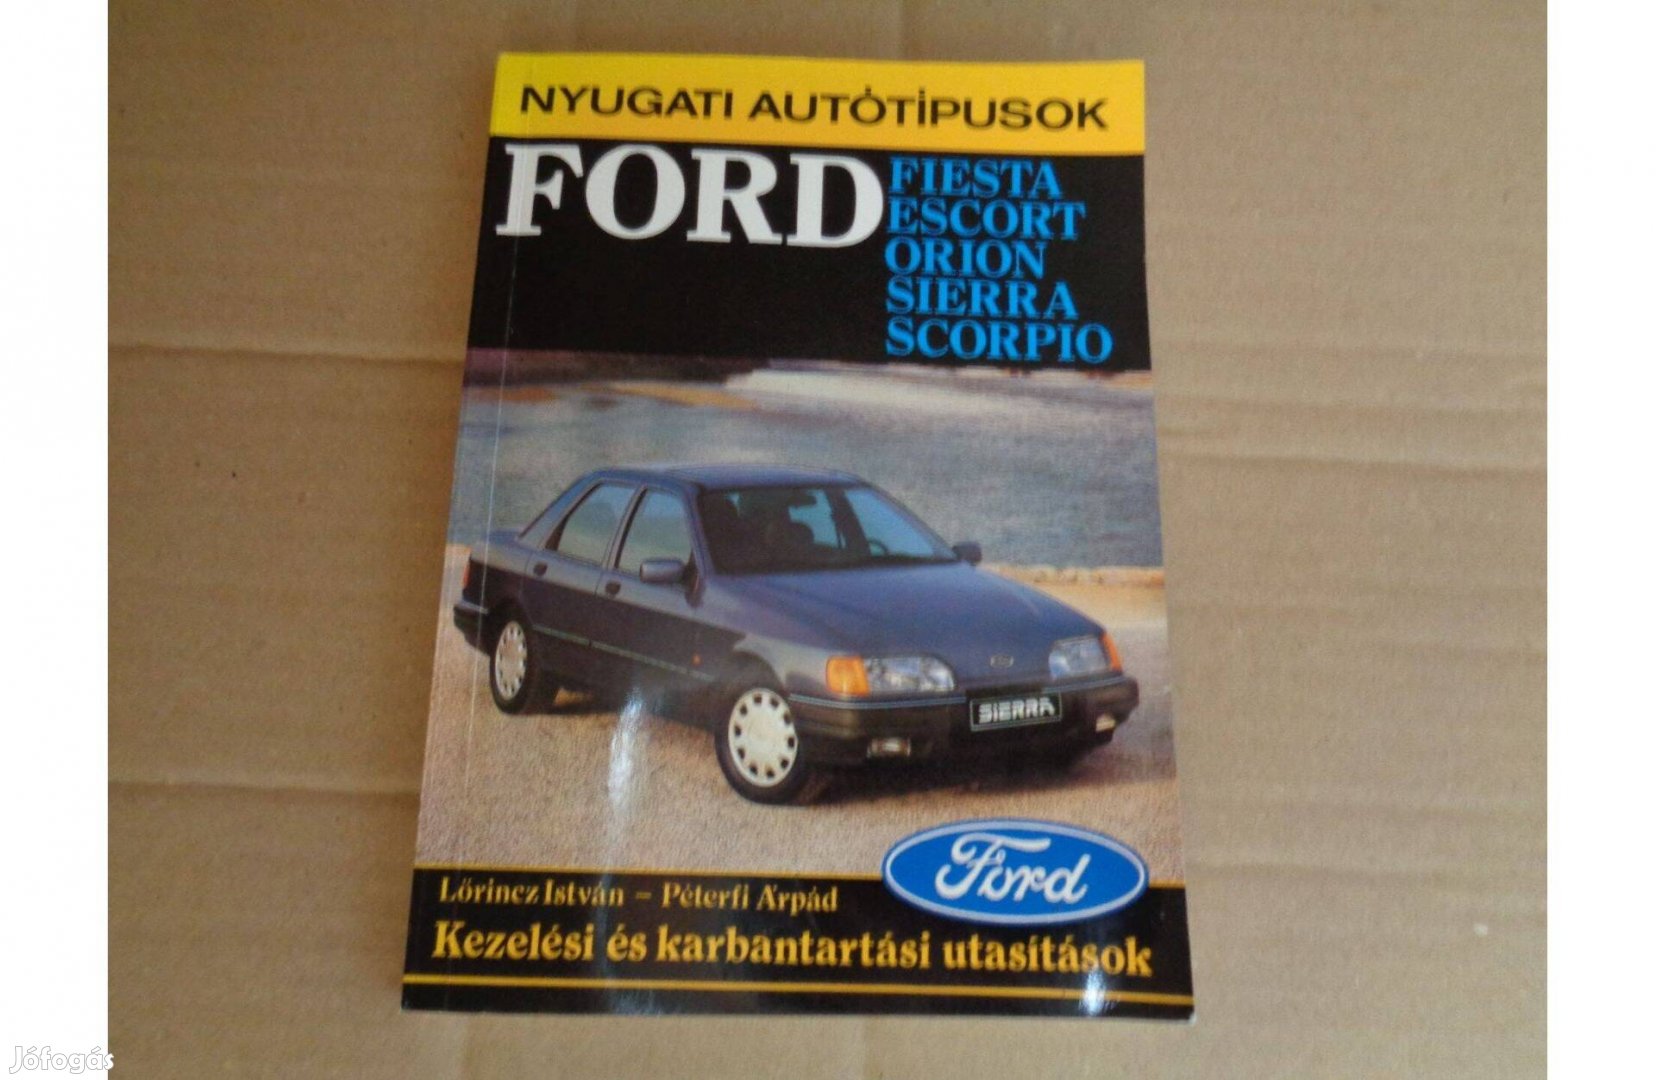 Ford Fiesta Escort Orion kezelési utasítás